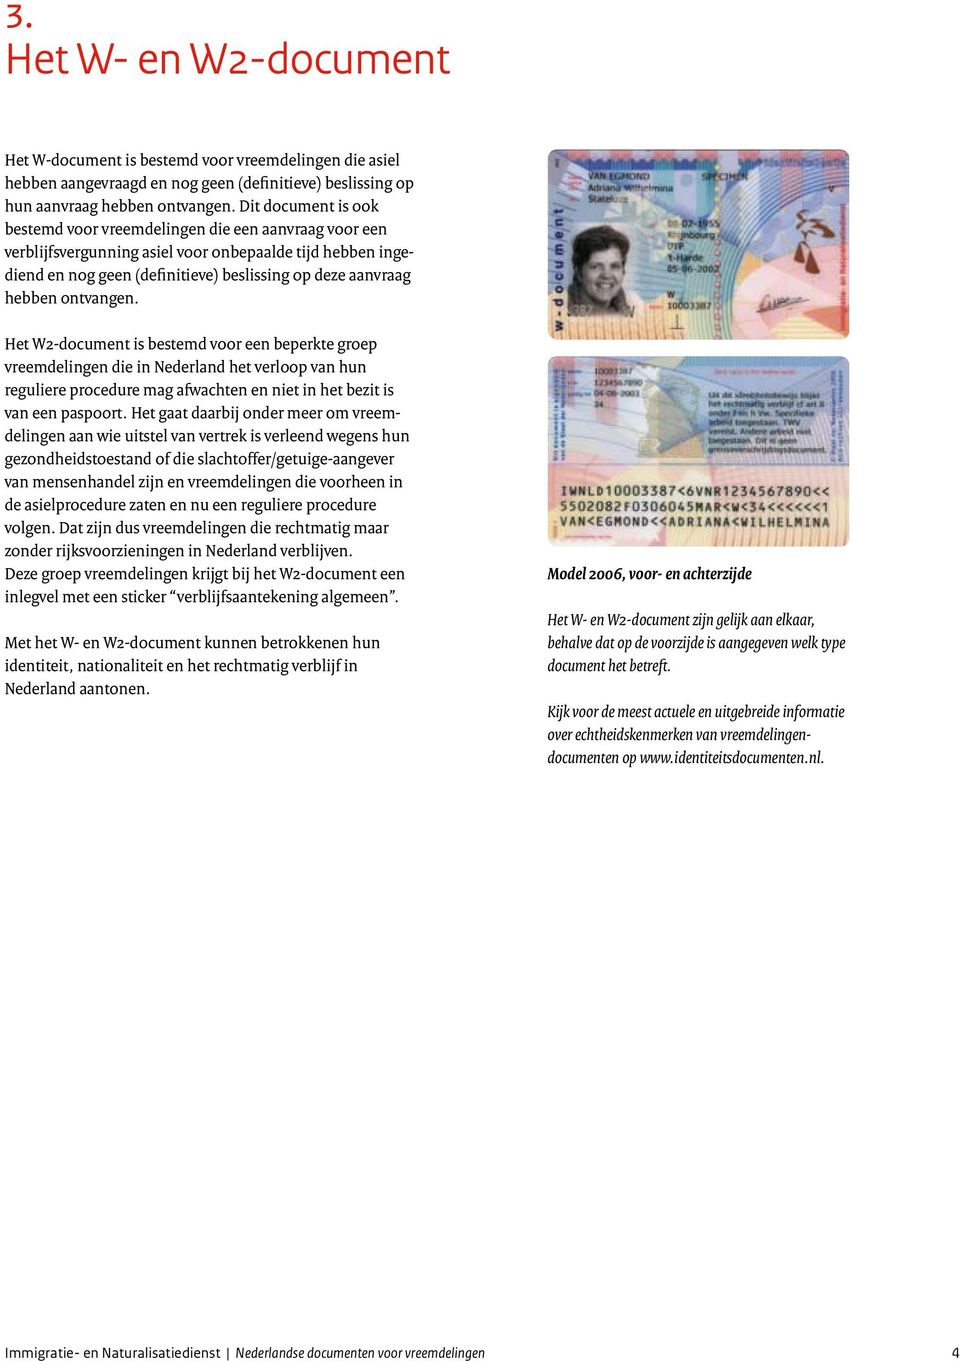 ontvangen. Het W2-document is bestemd voor een beperkte groep vreemdelingen die in Neder land het verloop van hun reguliere procedure mag afwachten en niet in het bezit is van een paspoort.